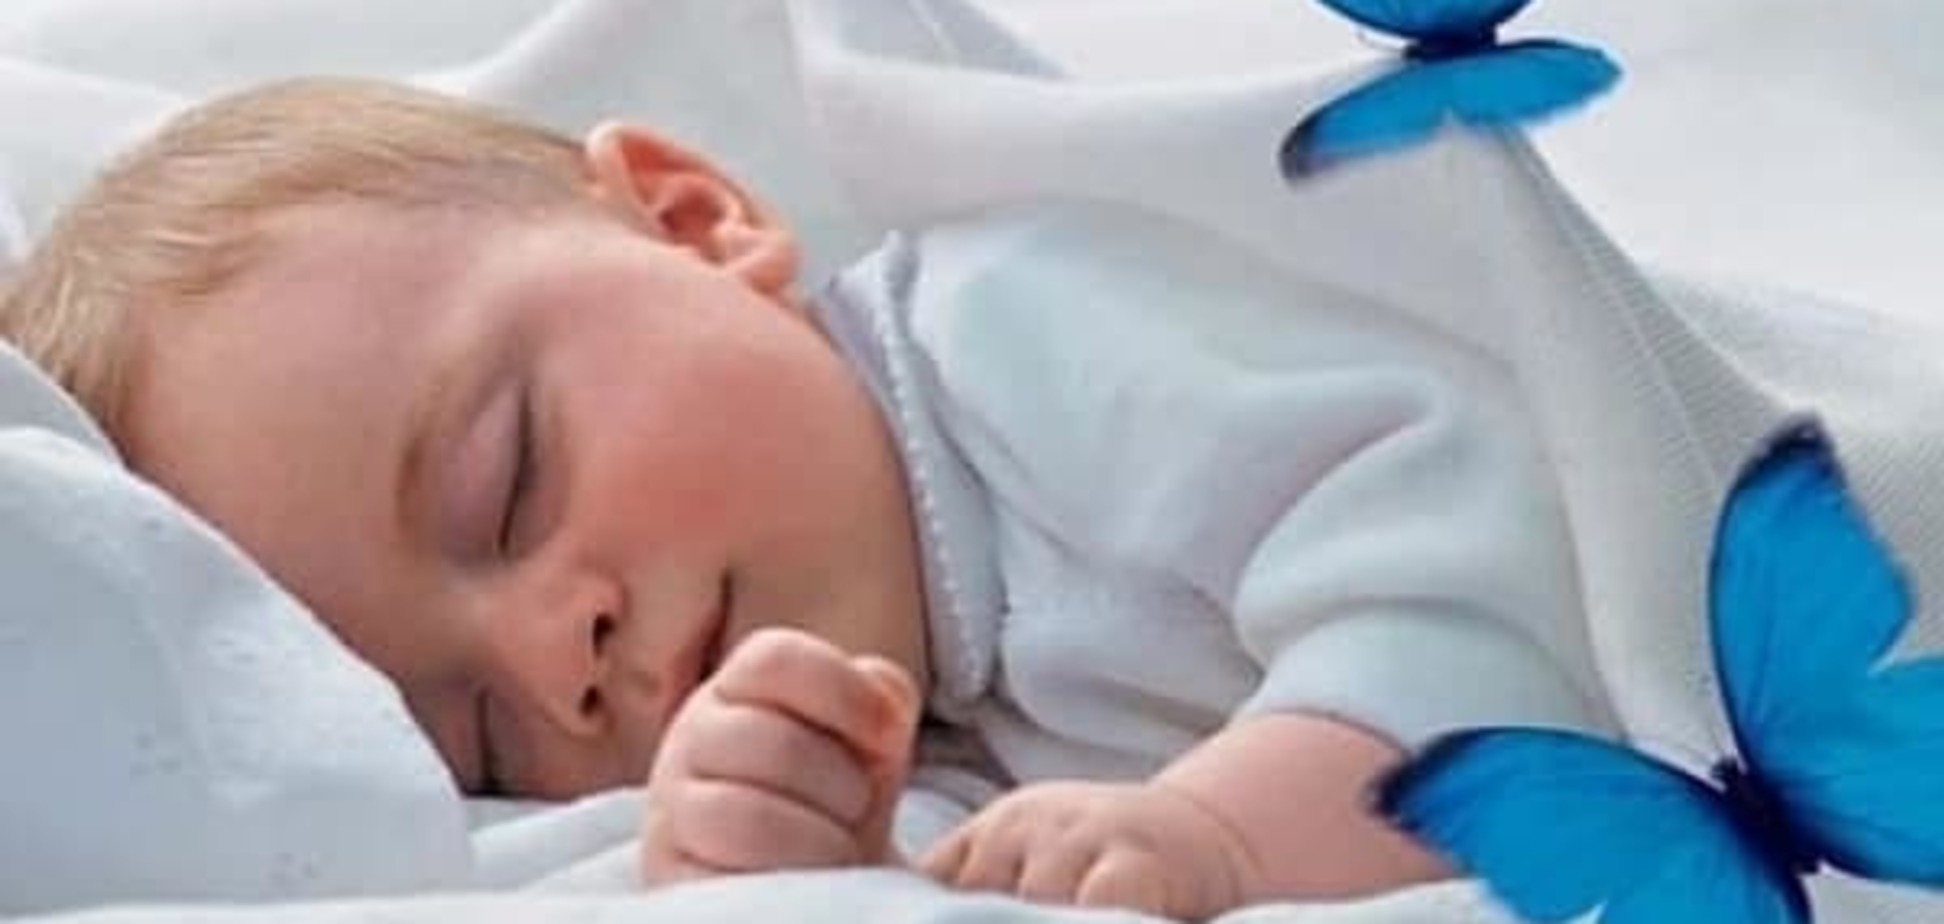 Как обезопасить сон младенца